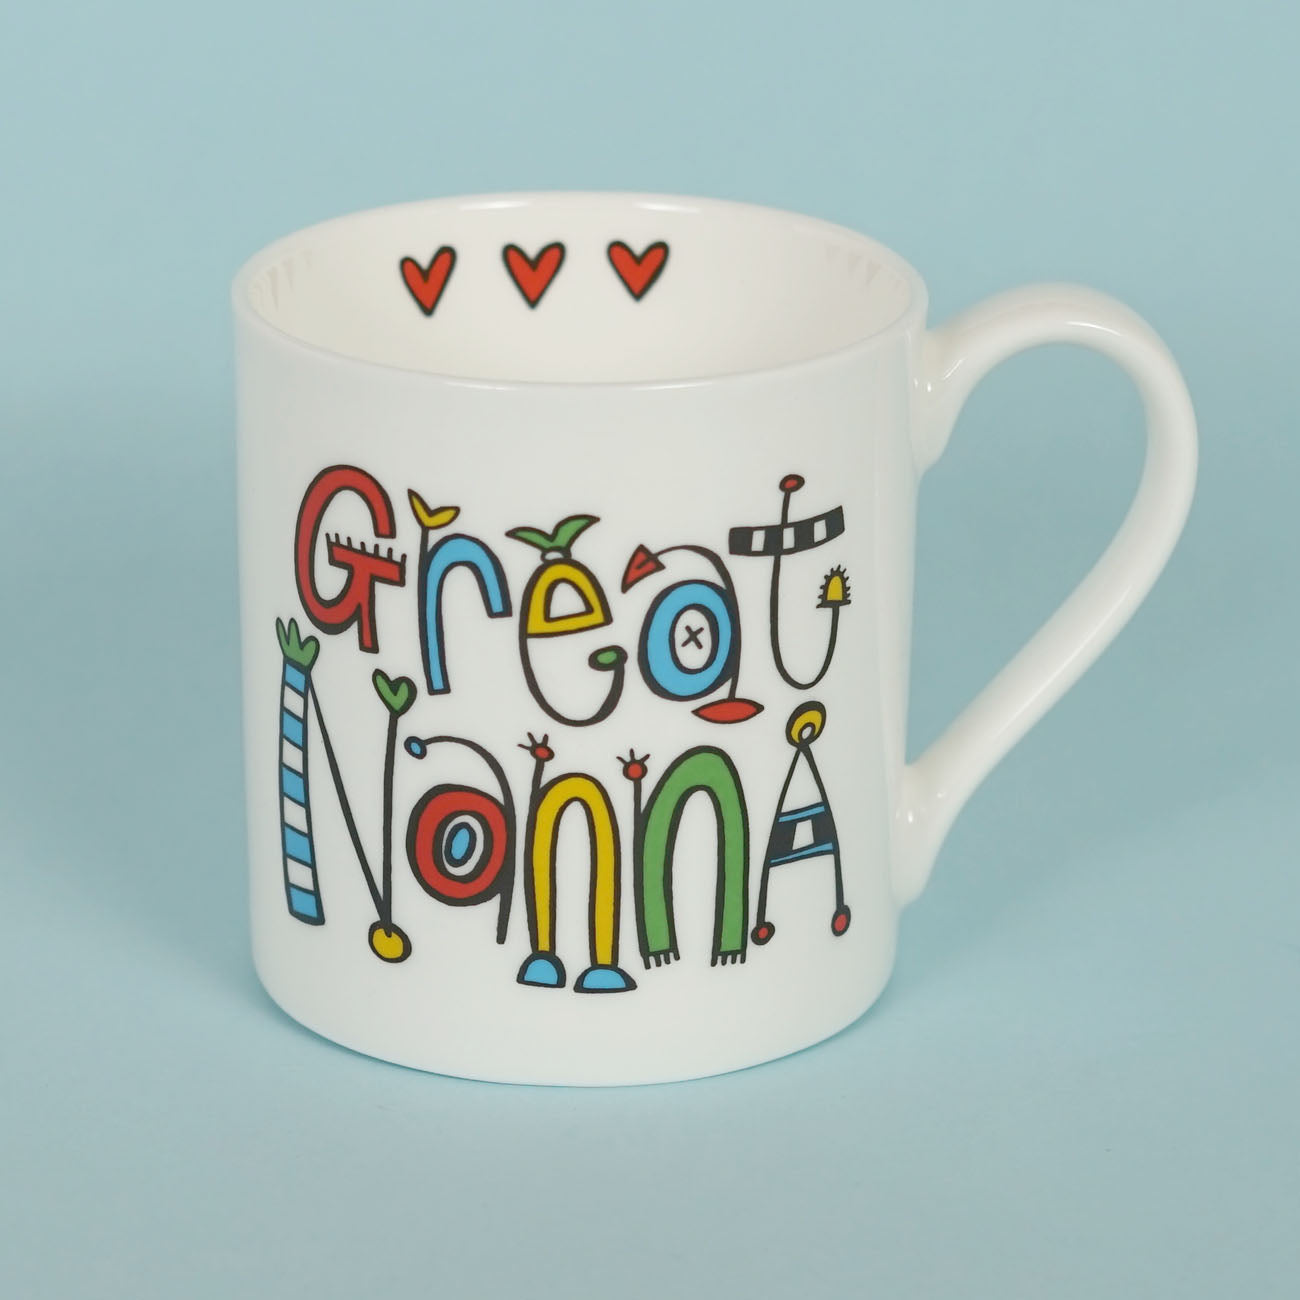 Personalised Great Nanna Mug